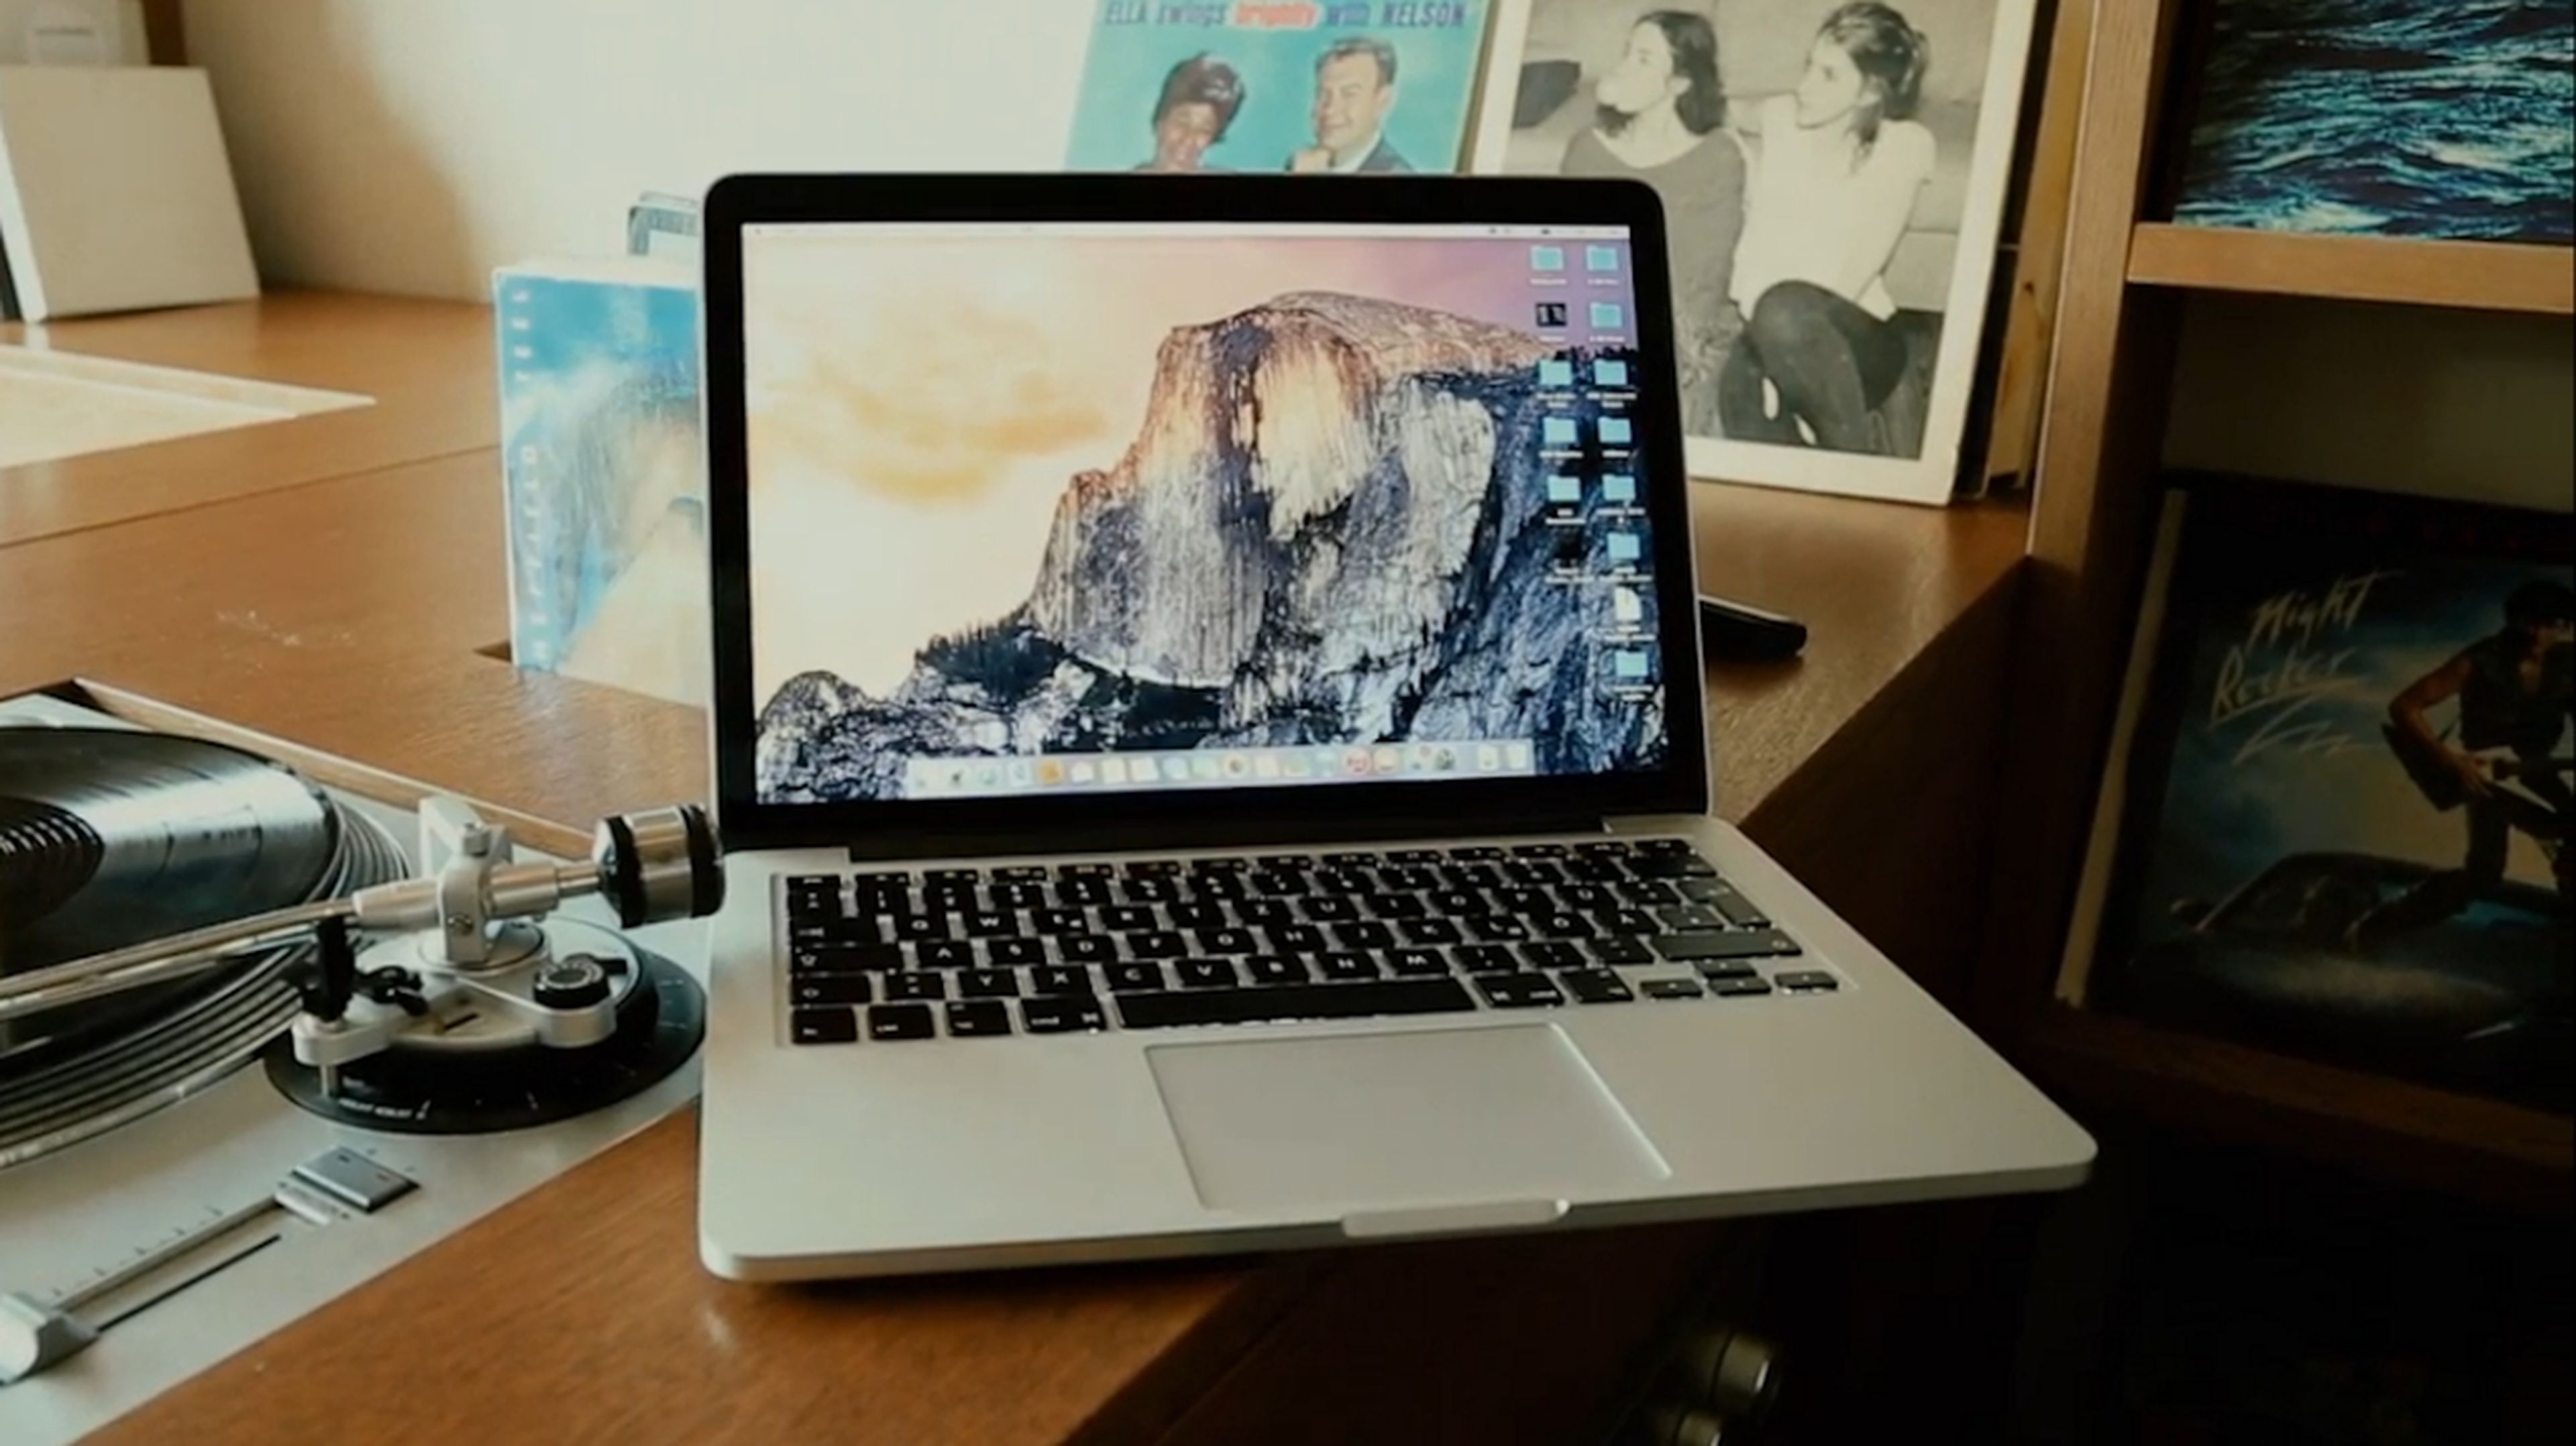 MacBook Pro 15" 2015